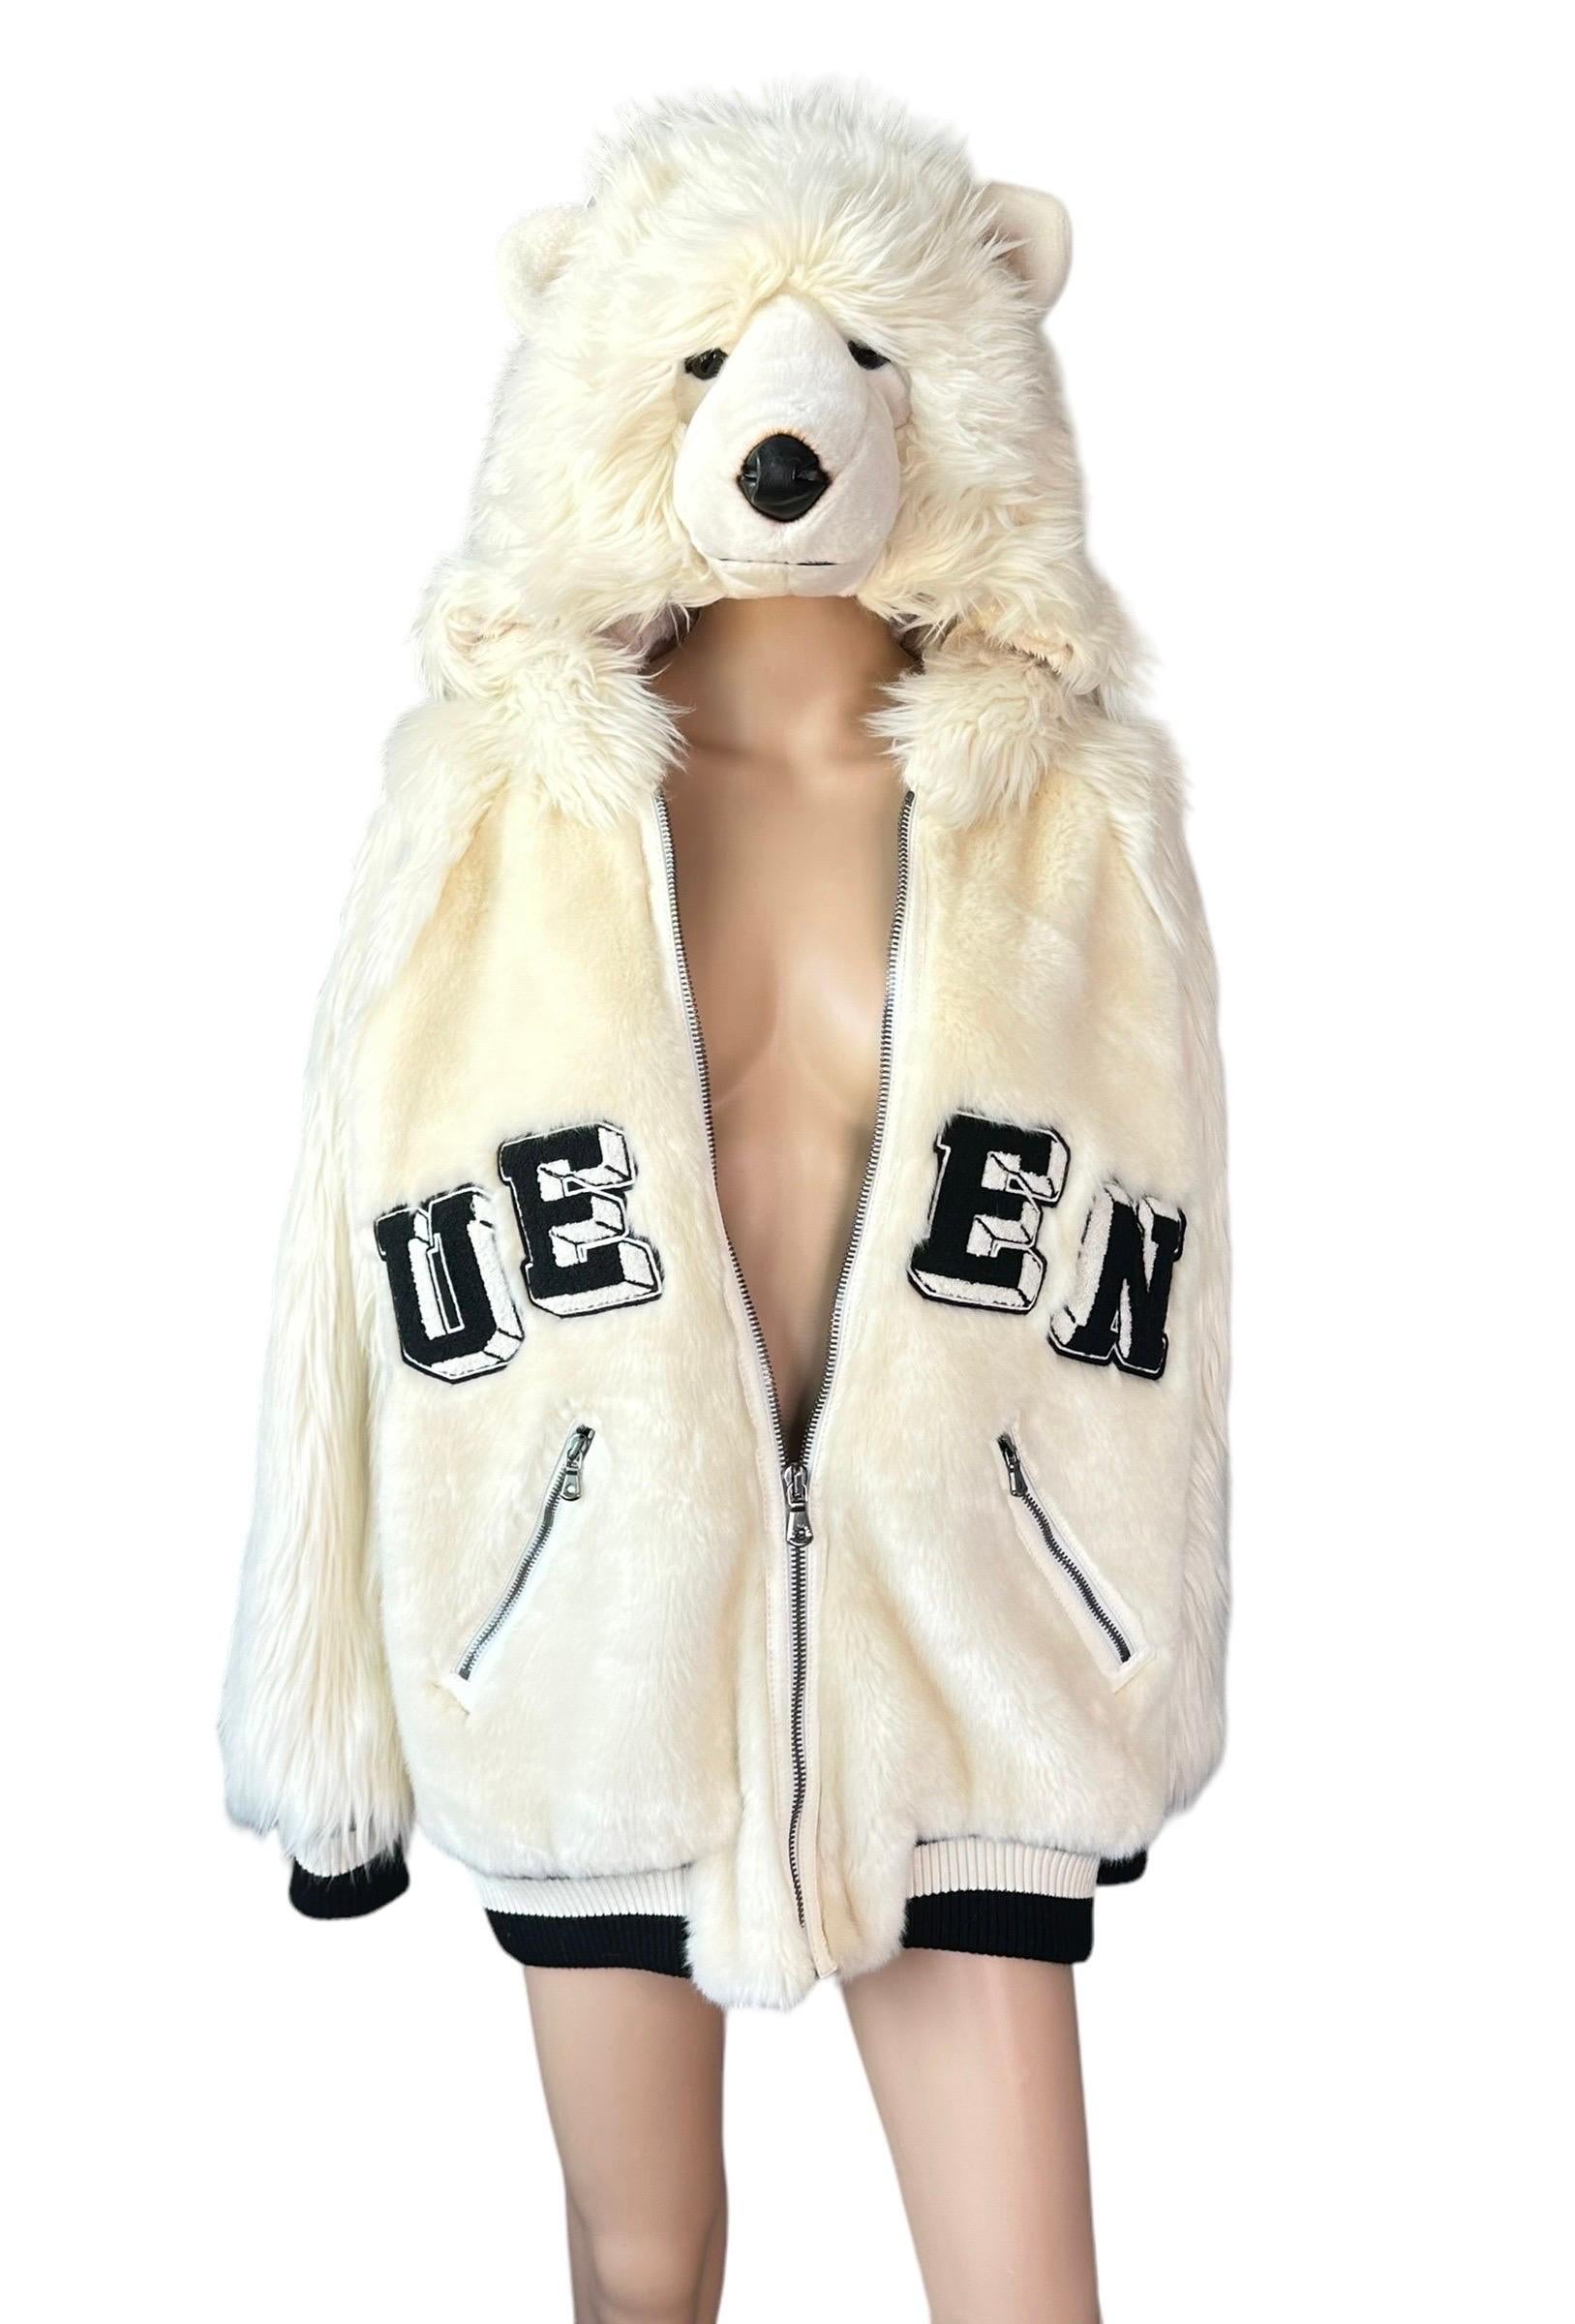 Dolce & Gabbana F/W 2017 Runway Teddy Bear Queen Eco Fur Hoodie Bomber Jacket Coat IT 40

Look 33 de la Collectional de l'automne 2017.

Dolce & Gabbana propose un blouson bombardier à capuche en fausse fourrure matelassée avec capuche à tête